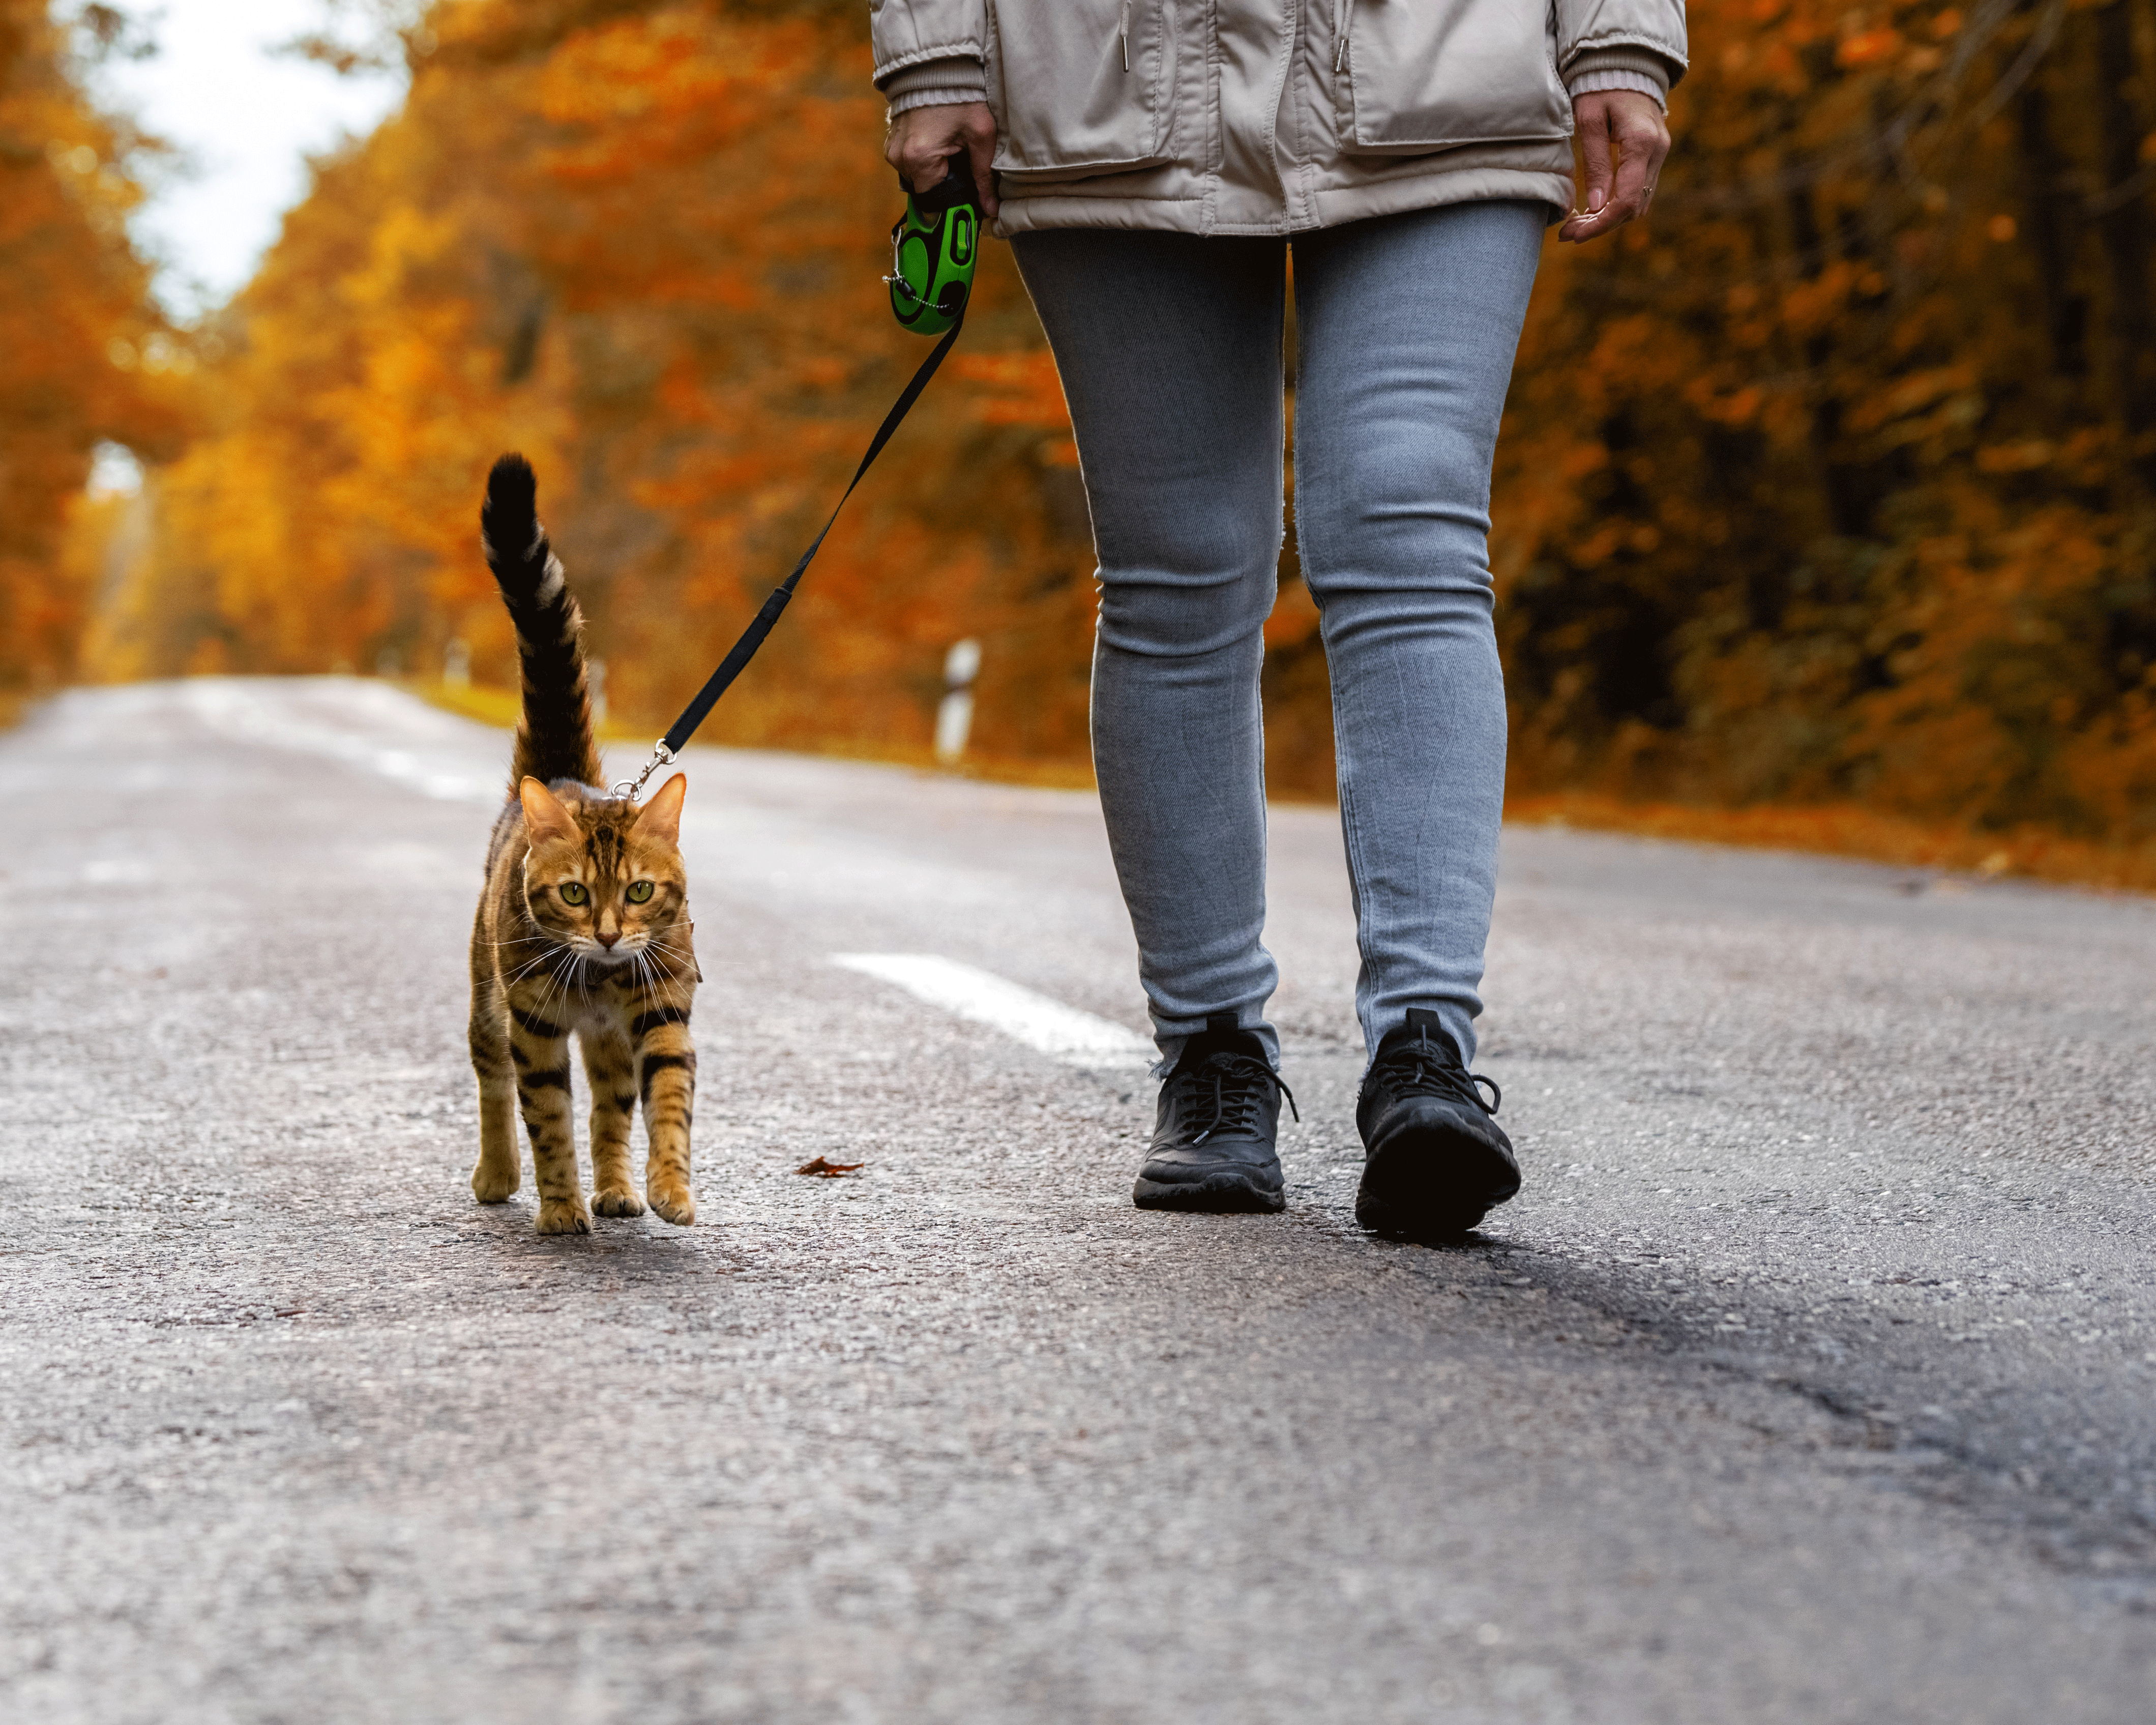 Promener un chat en laisse